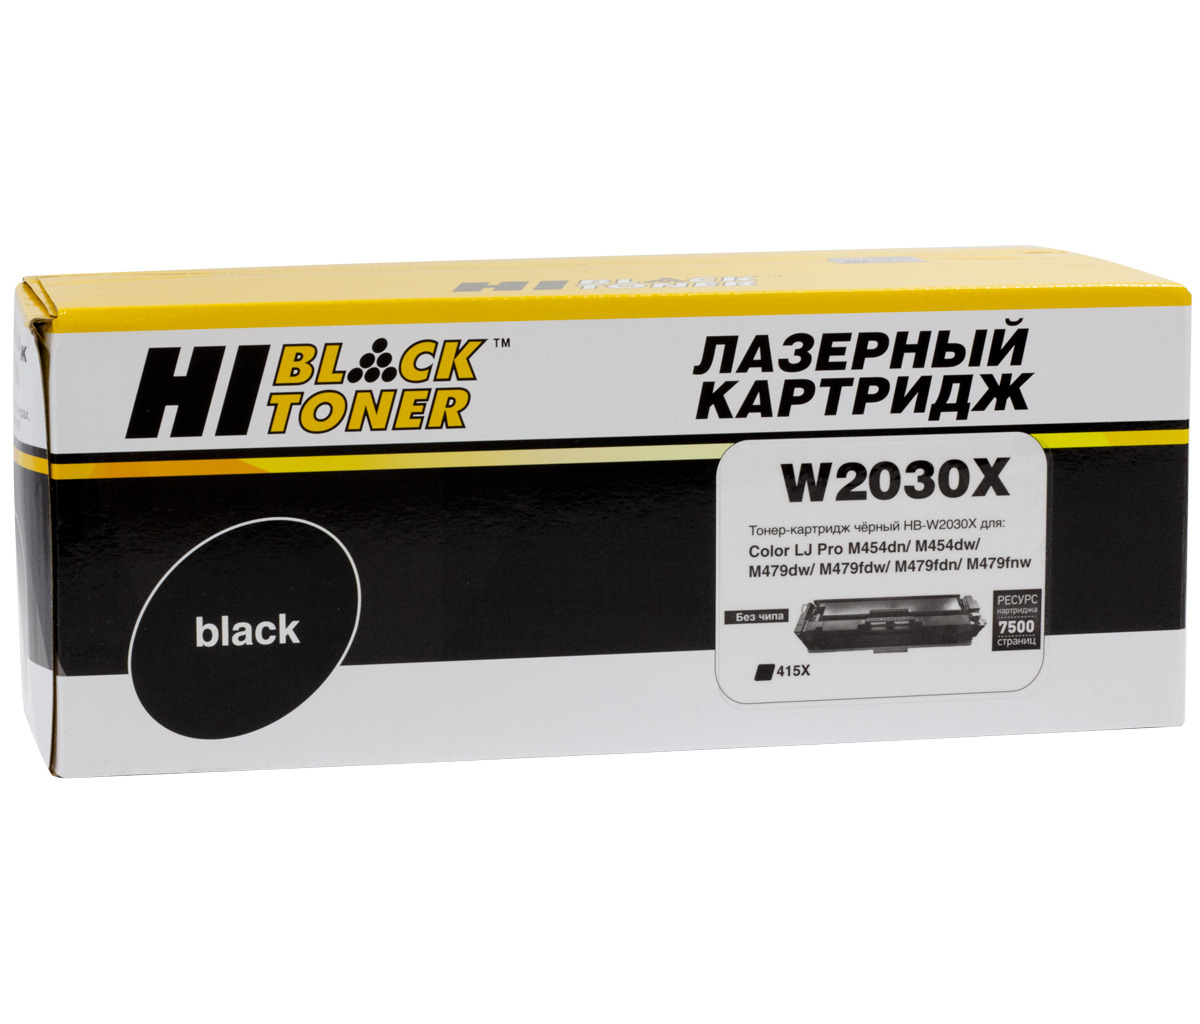 Тонер-картриджHi-Black(HB-W2030X)дляHPColorLaserJetProM454dn/M479dw,№415X,Bk,7,5Kбезчипа